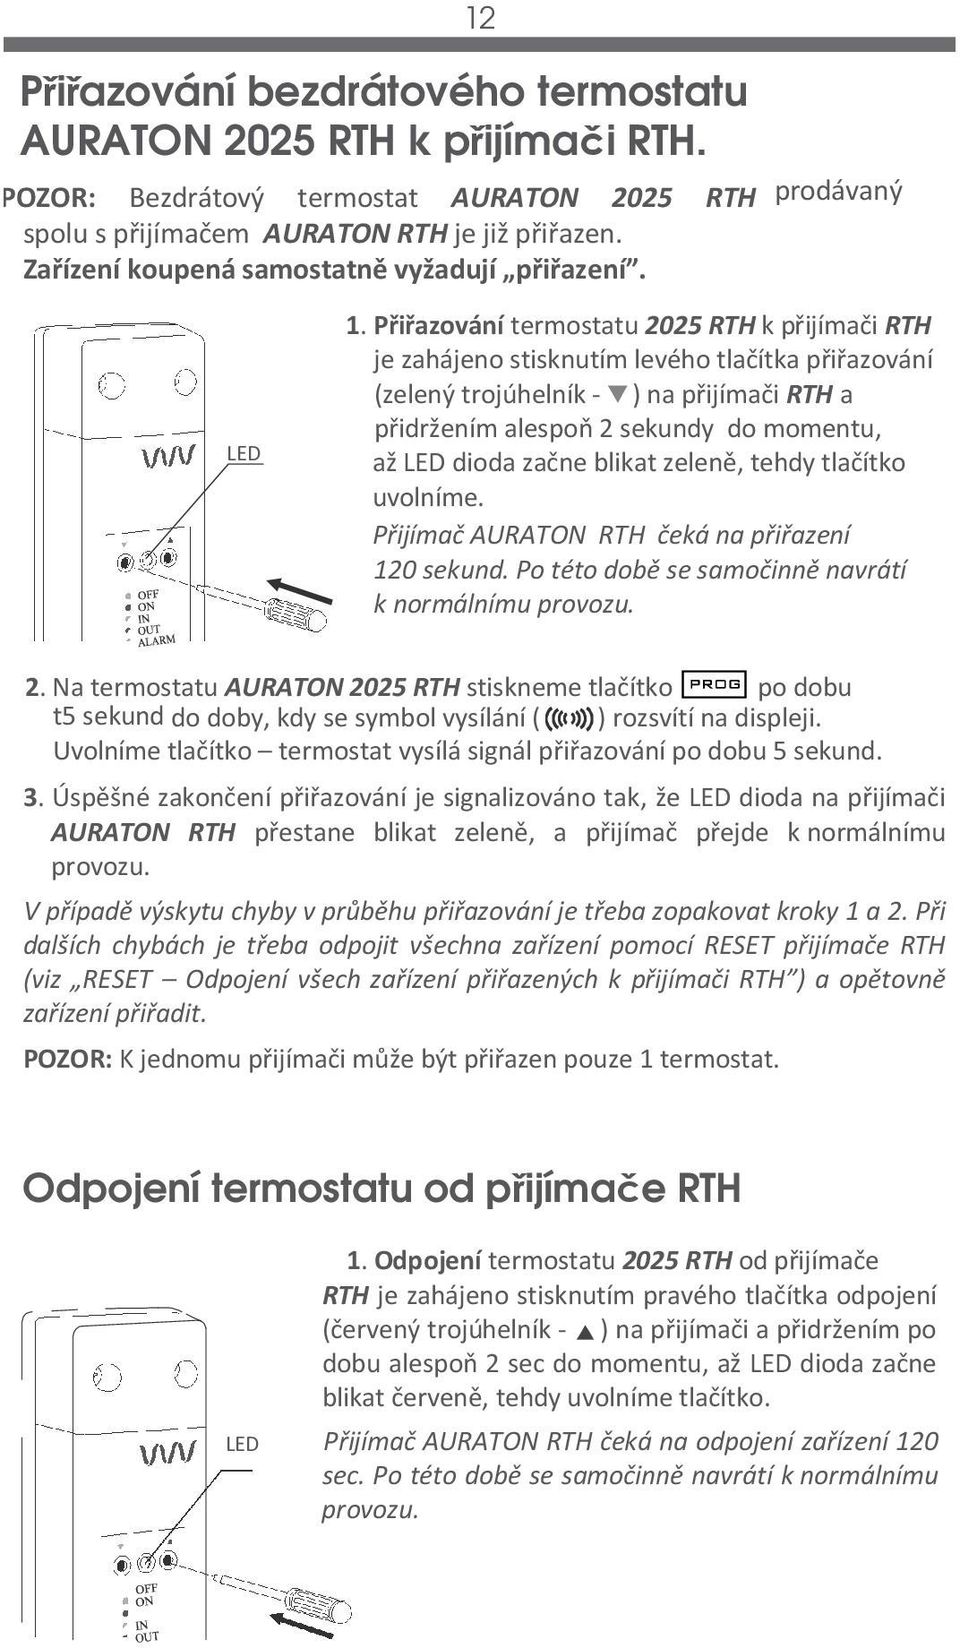 Přiřazování termostatu 2025 RTH k přijímači RTH je zahájeno stisknutím levého tlačítka přiřazování (zelený trojúhelník - ) na přijímači RTH a přidržením alespoň 2 sekundy do momentu, až LED dioda